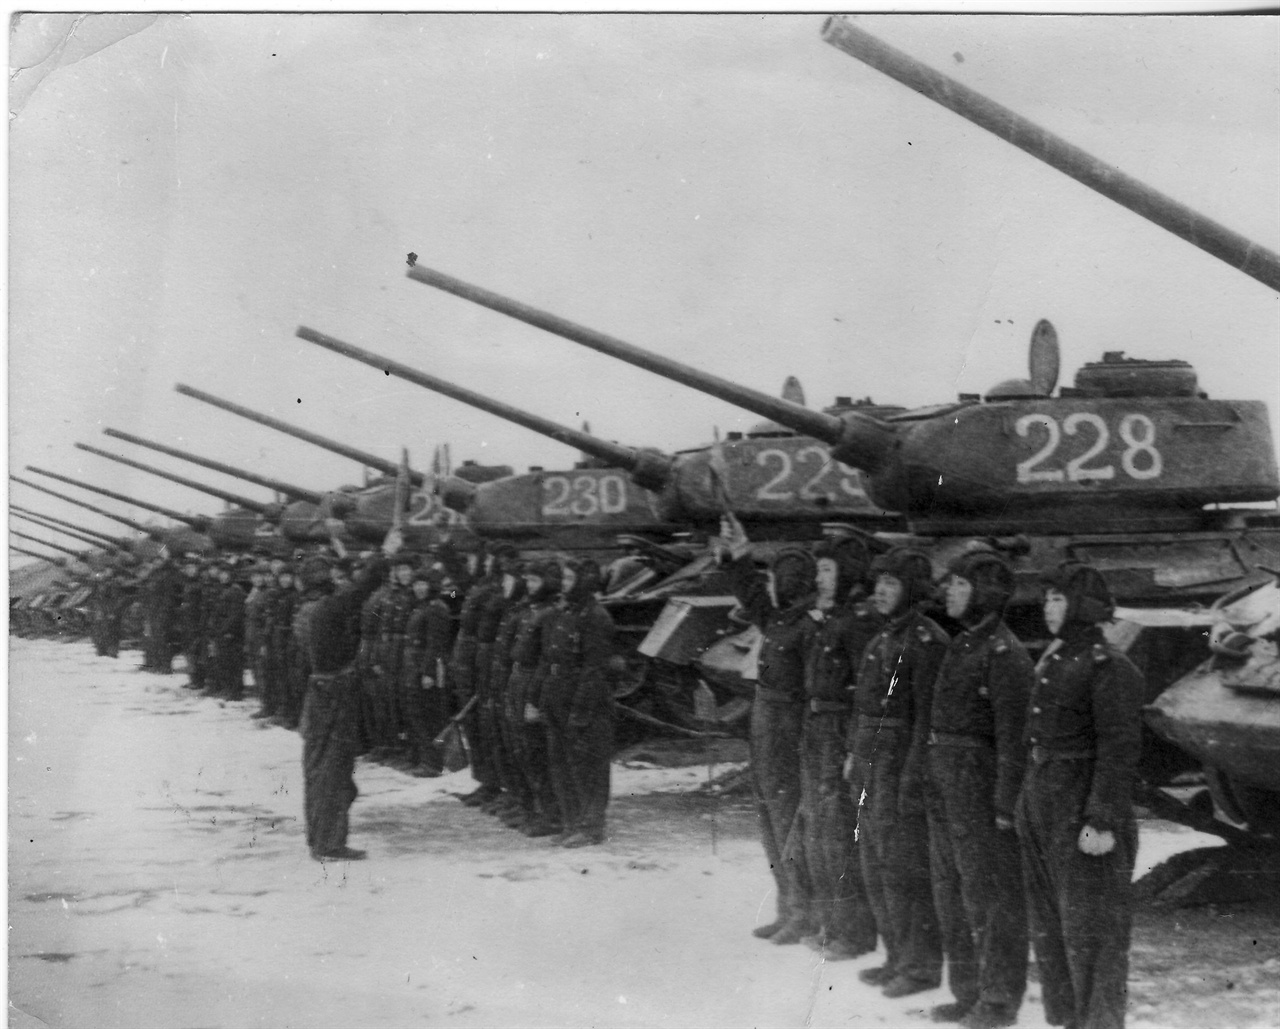 소련으로부터 원조받은 무기로 편성한 인민군 탱크부대 사열장면